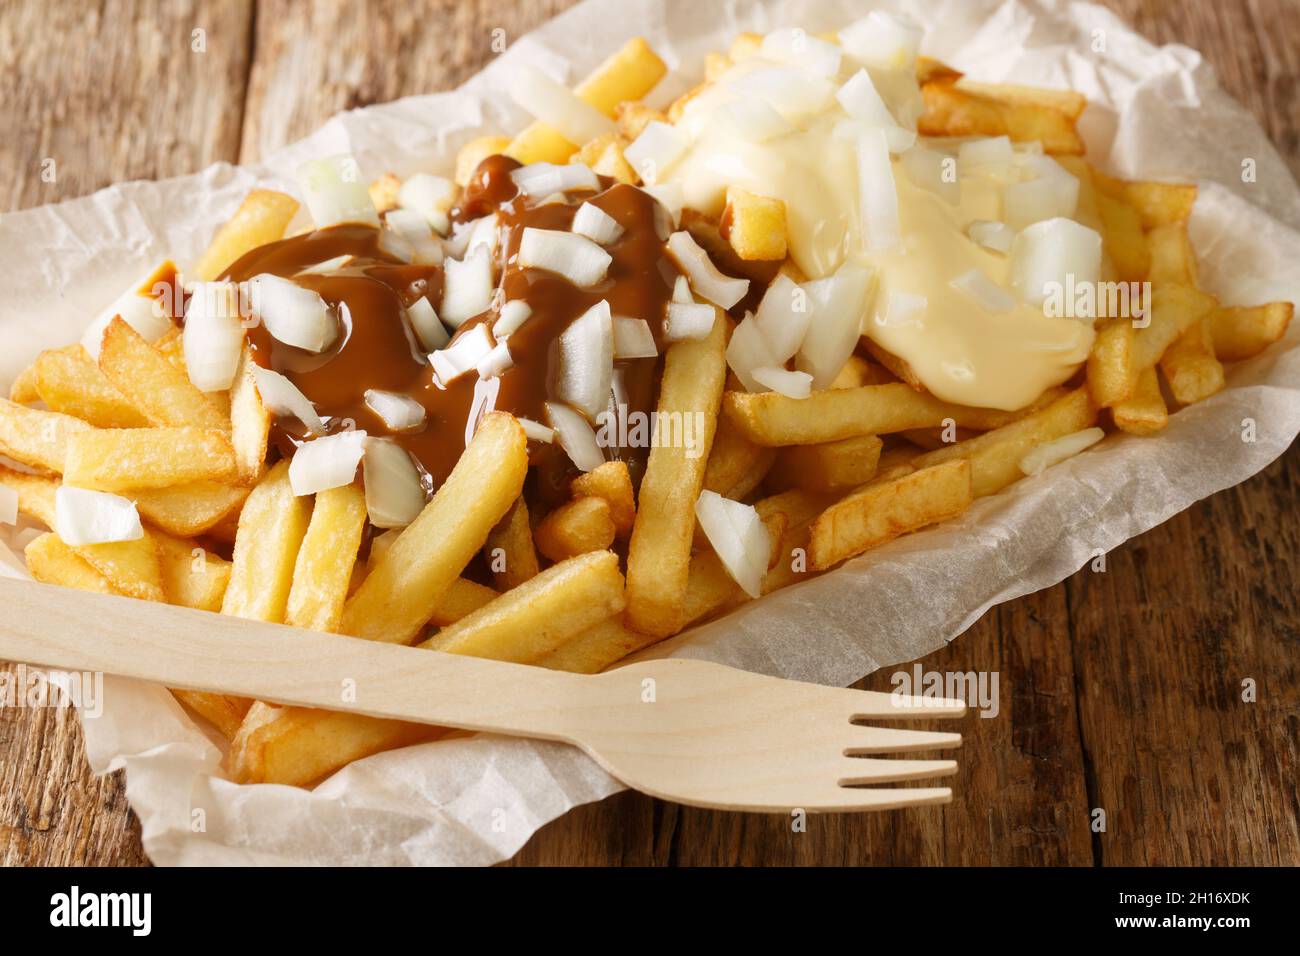 Plats à emporter néerlandais Patatje oorlog frites avec sauces et oignons frais gros plan dans une assiette sur la table. Horizontal Banque D'Images